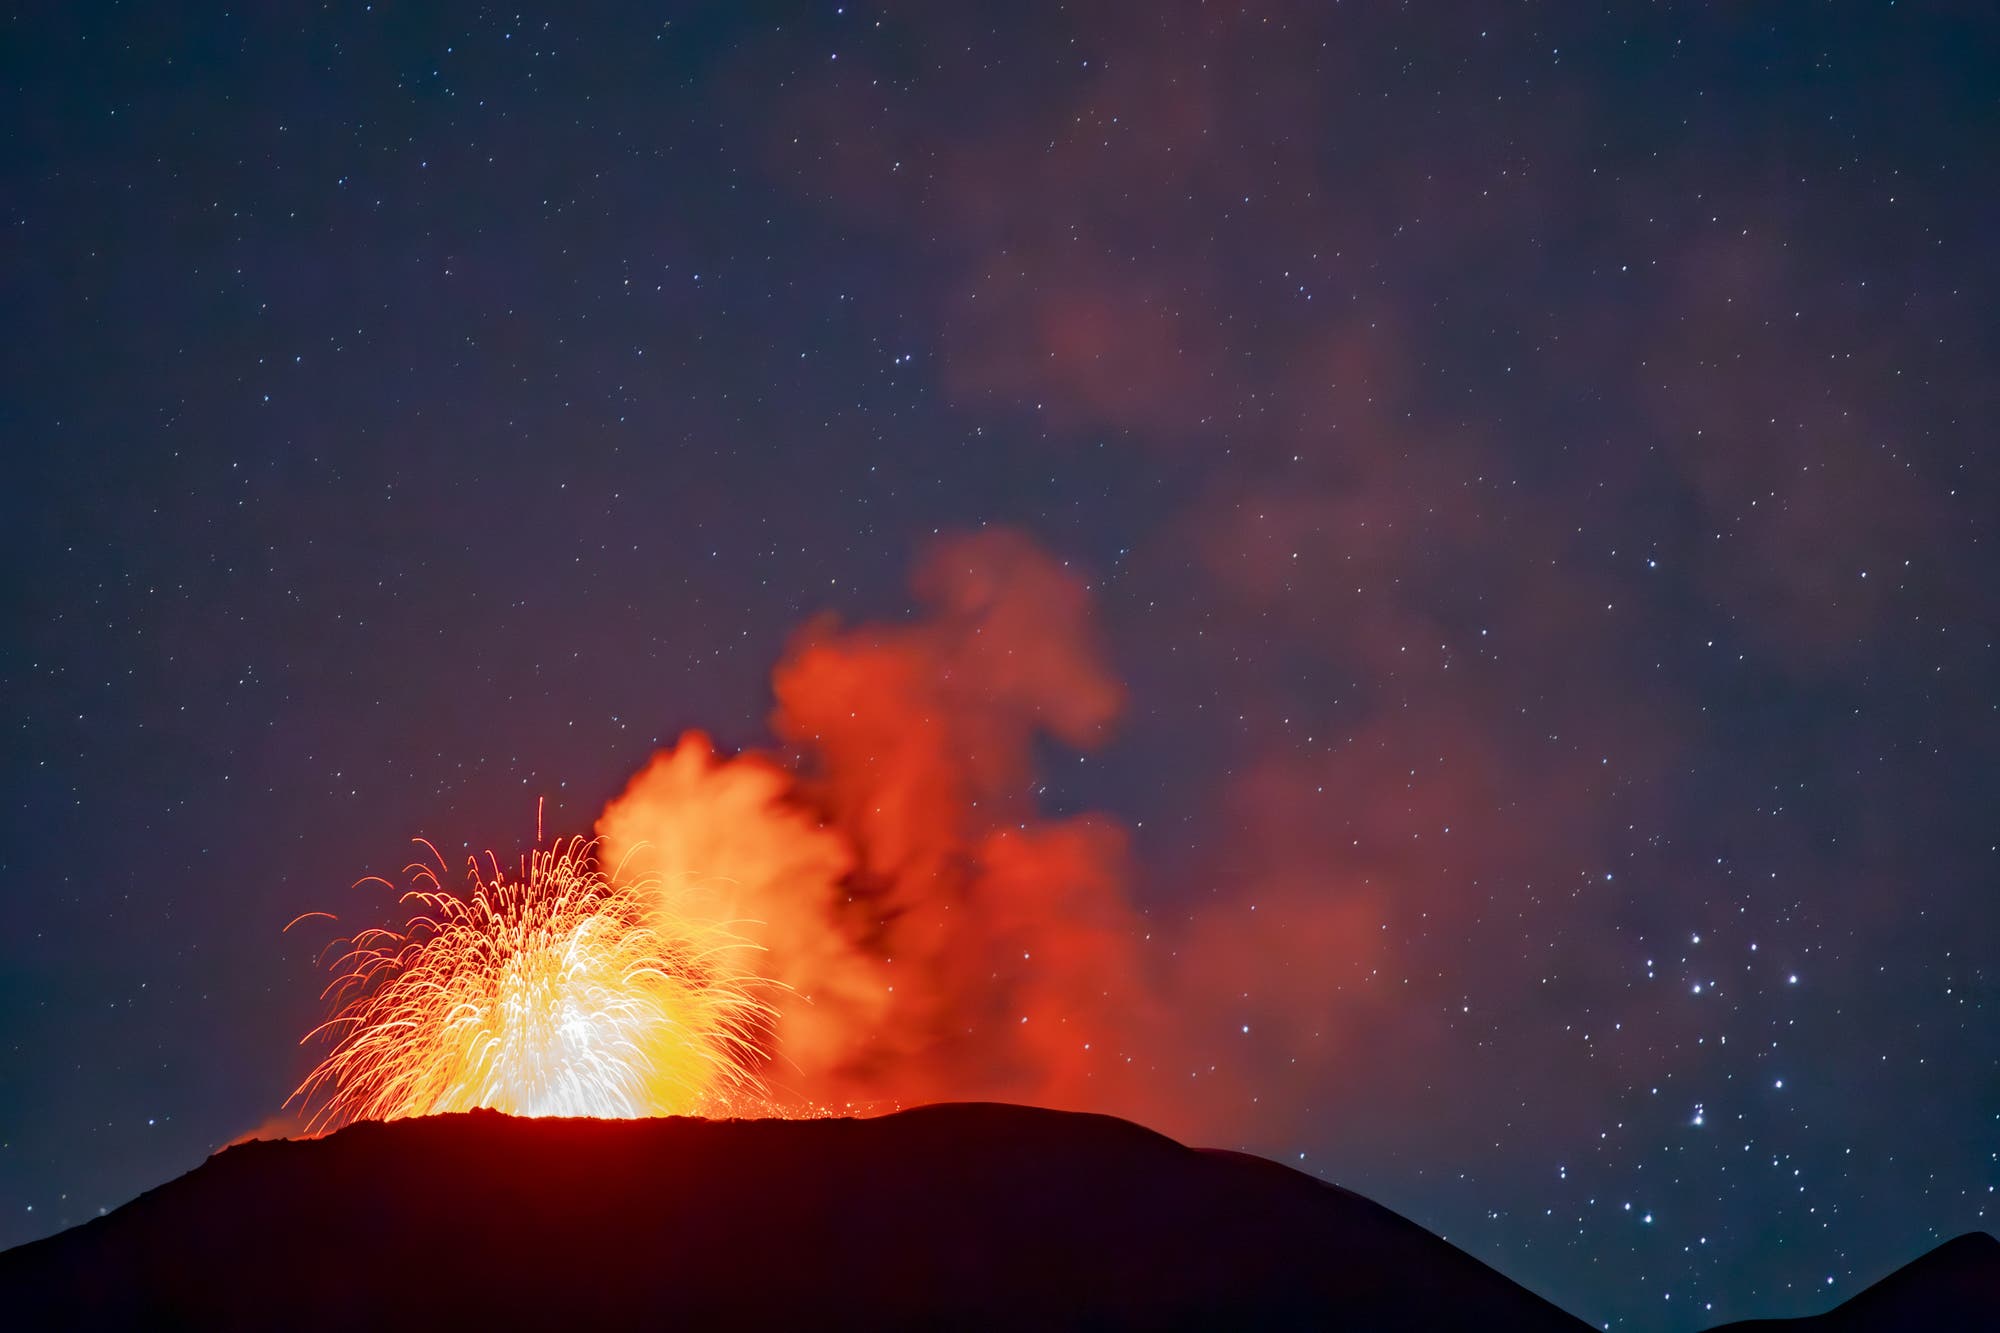 The Plejades and Etna volcano